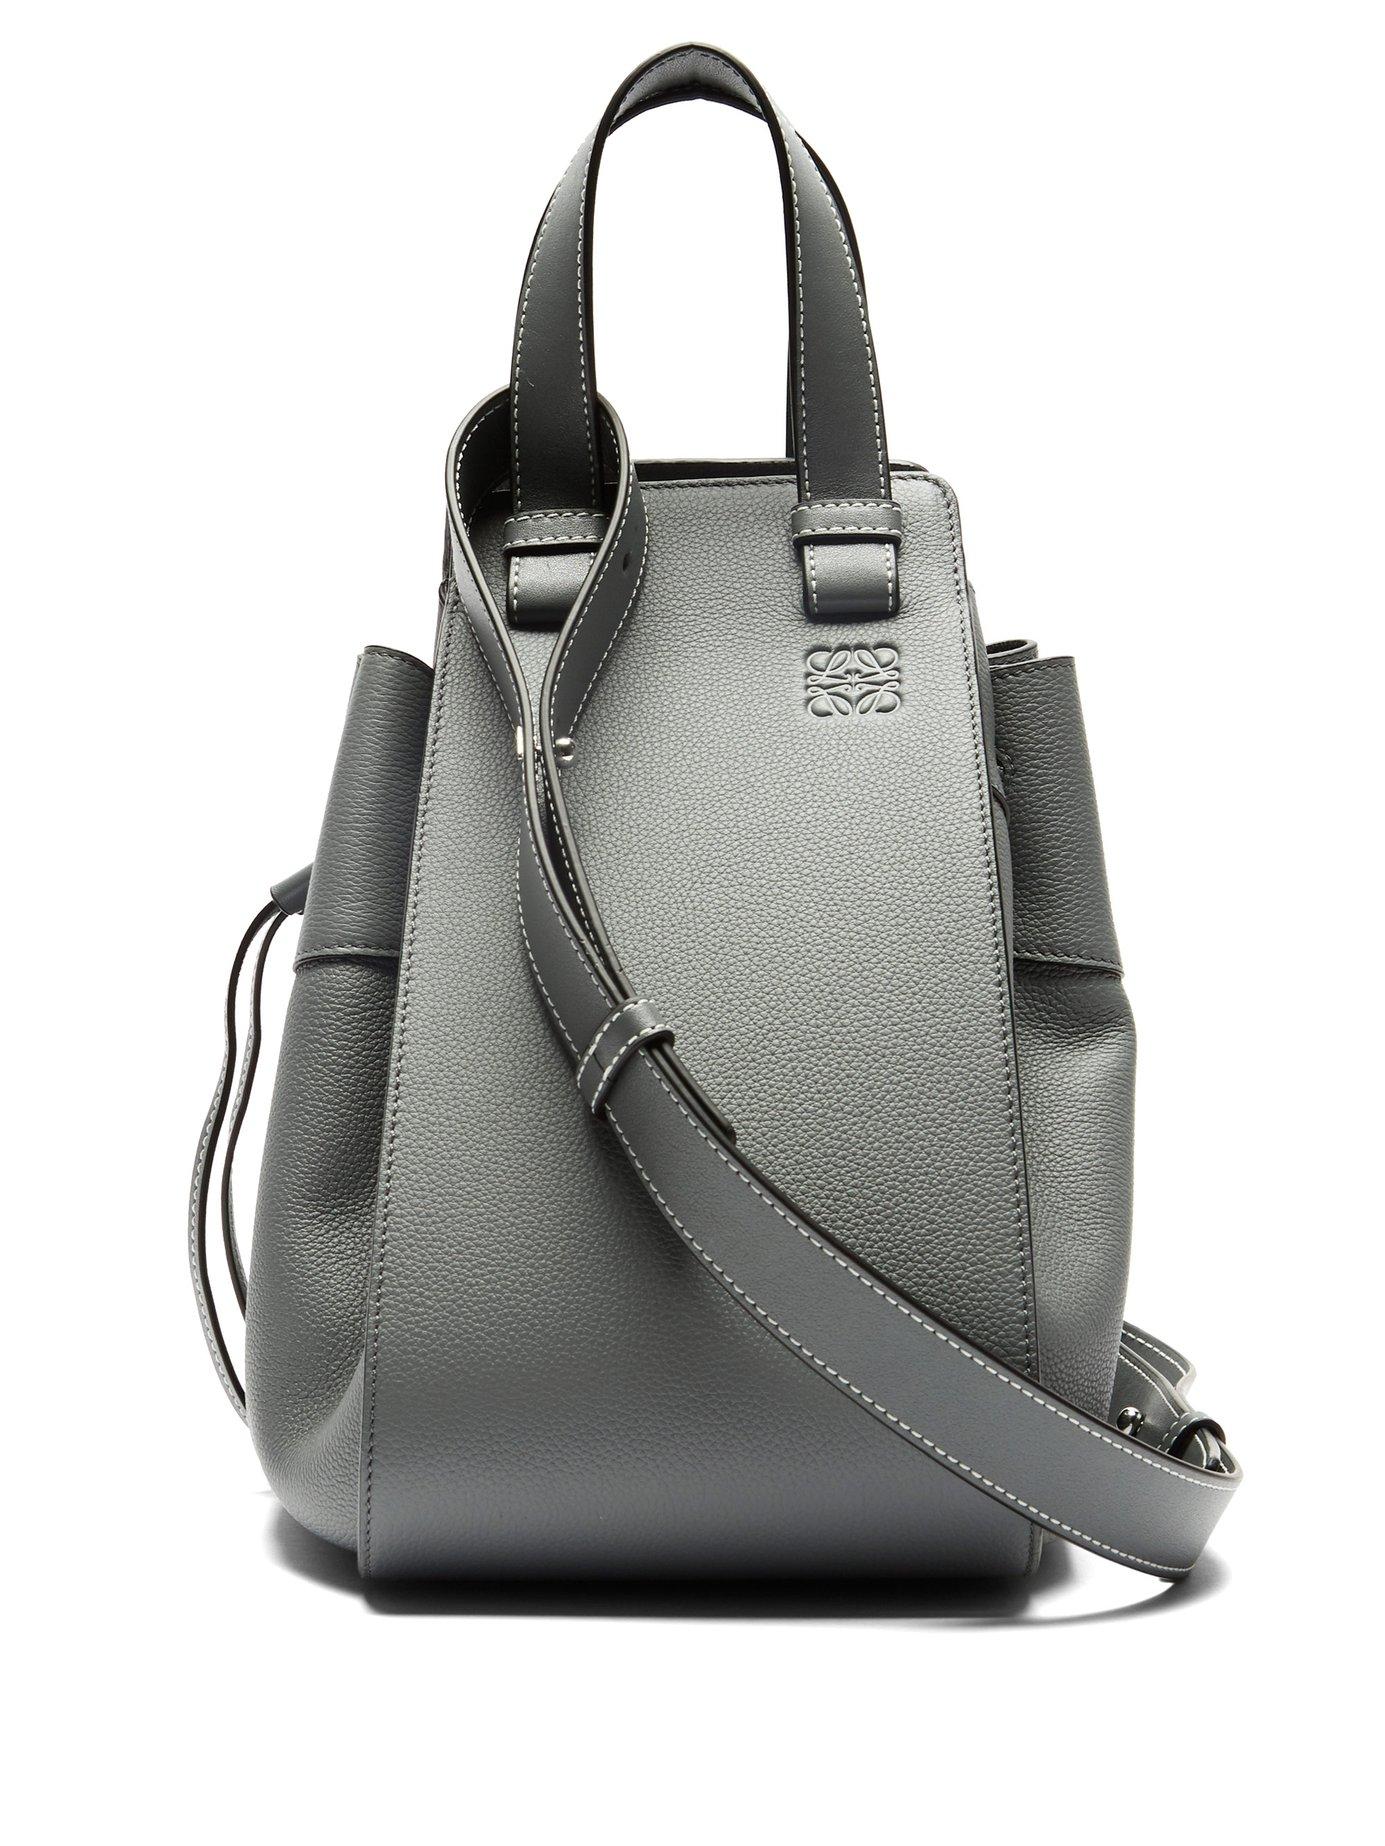 Loewe Hammock Medium Leather Tote Bag in Gray